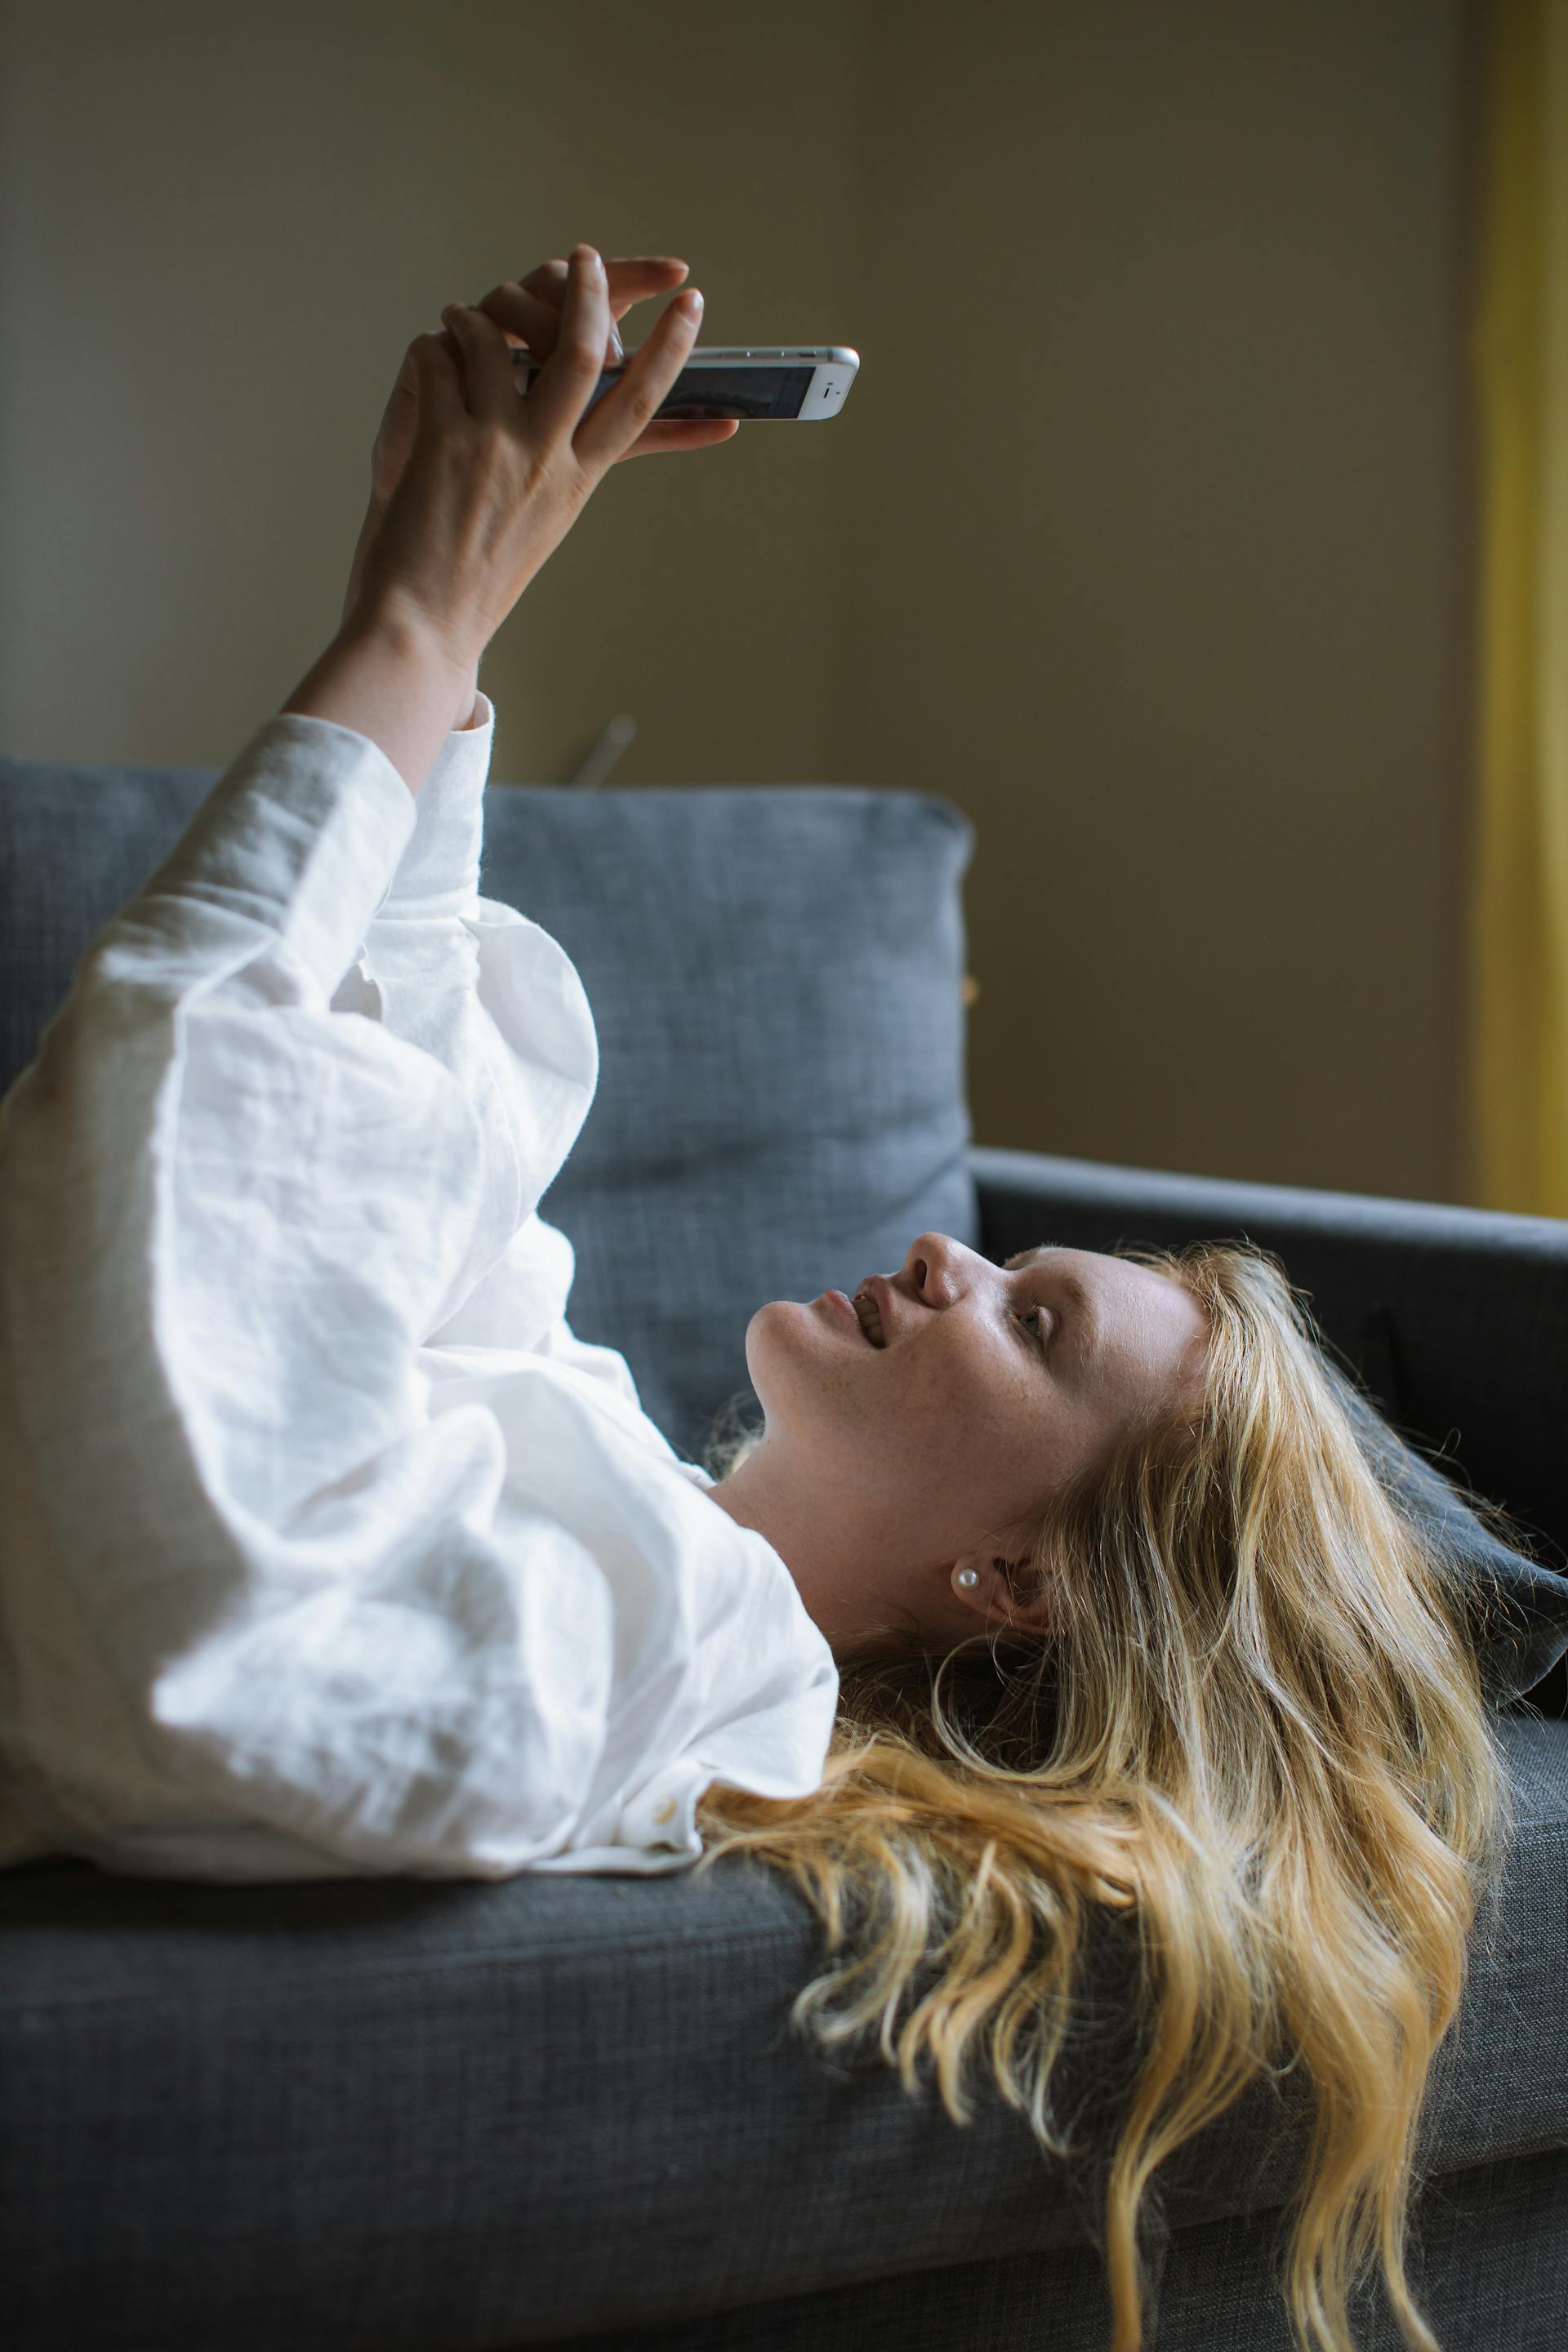 Eine junge Frau benutzt ihr Telefon, während sie auf einem Sofa liegt | Quelle: Pexels